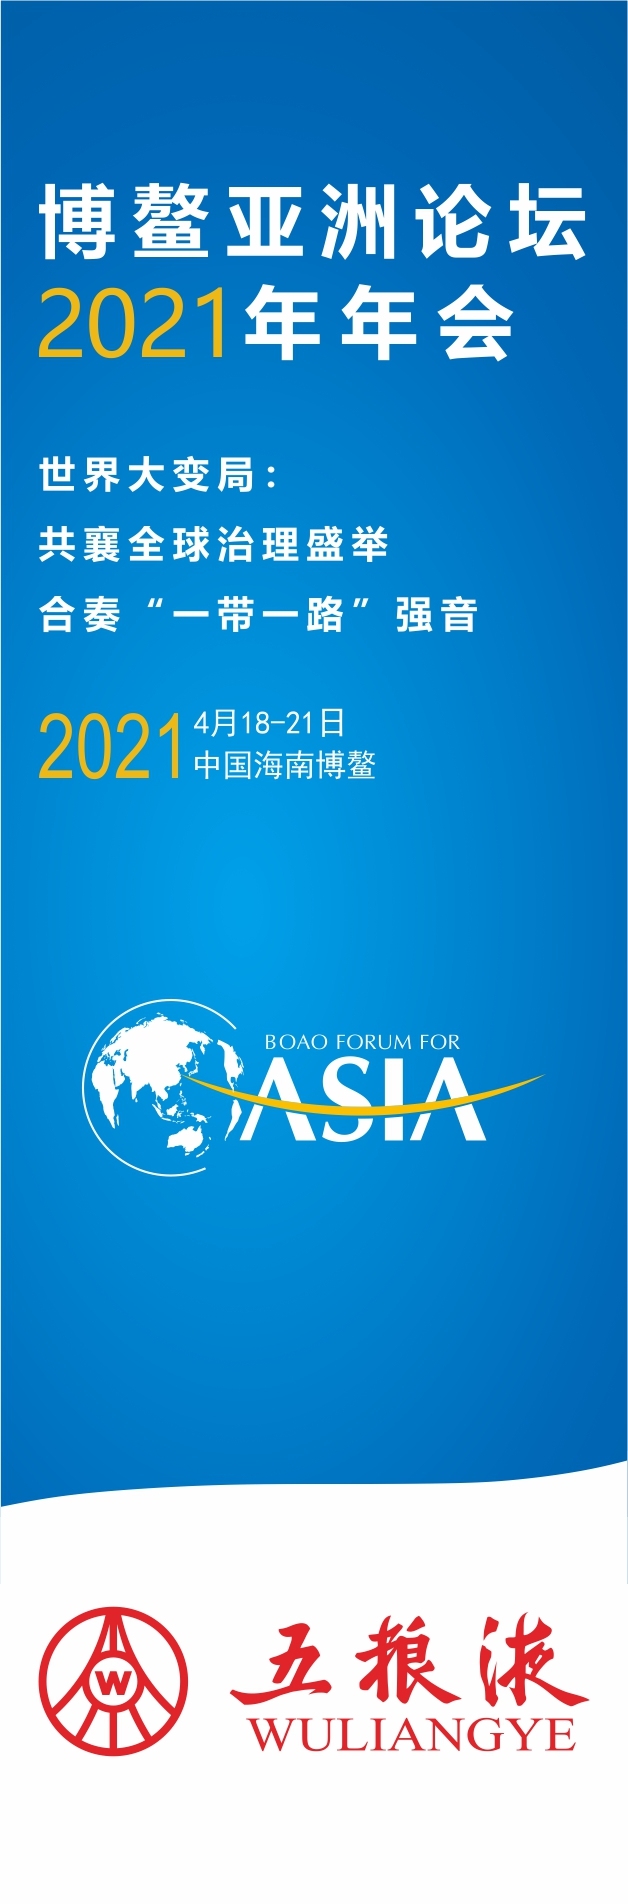 博鳌亚洲论坛2021年年会氛围营造方案图7